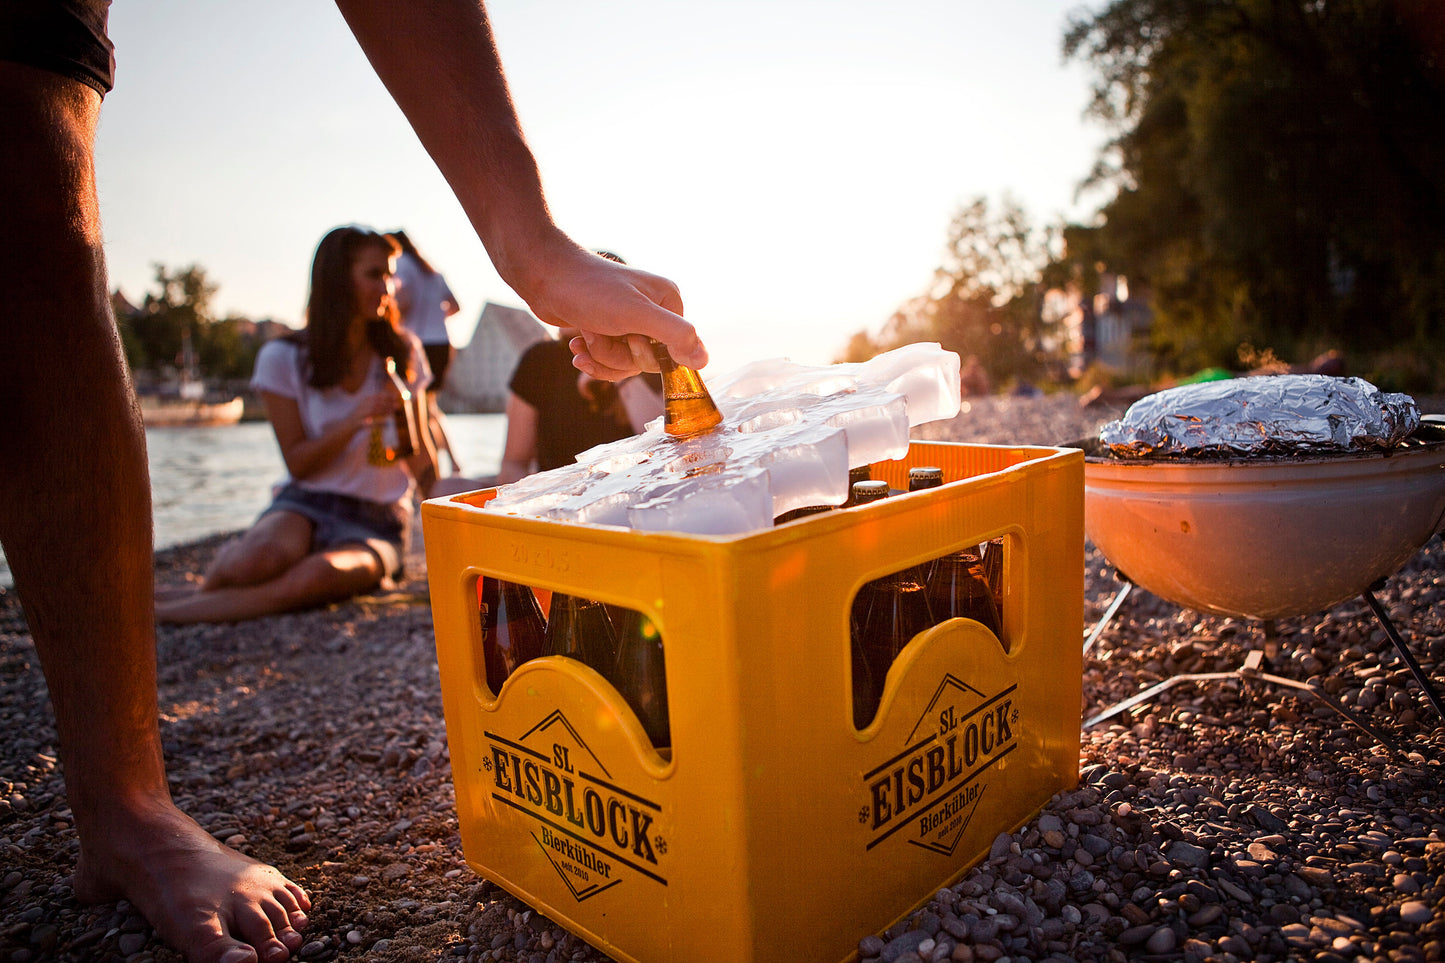 Eisblock Bierkühler - Die Innovation um deinen Getränkekasten unterwegs zu kühlen - Für 20x0,5l oder 24x0,33l - Jetzt eiskalt bestellen!